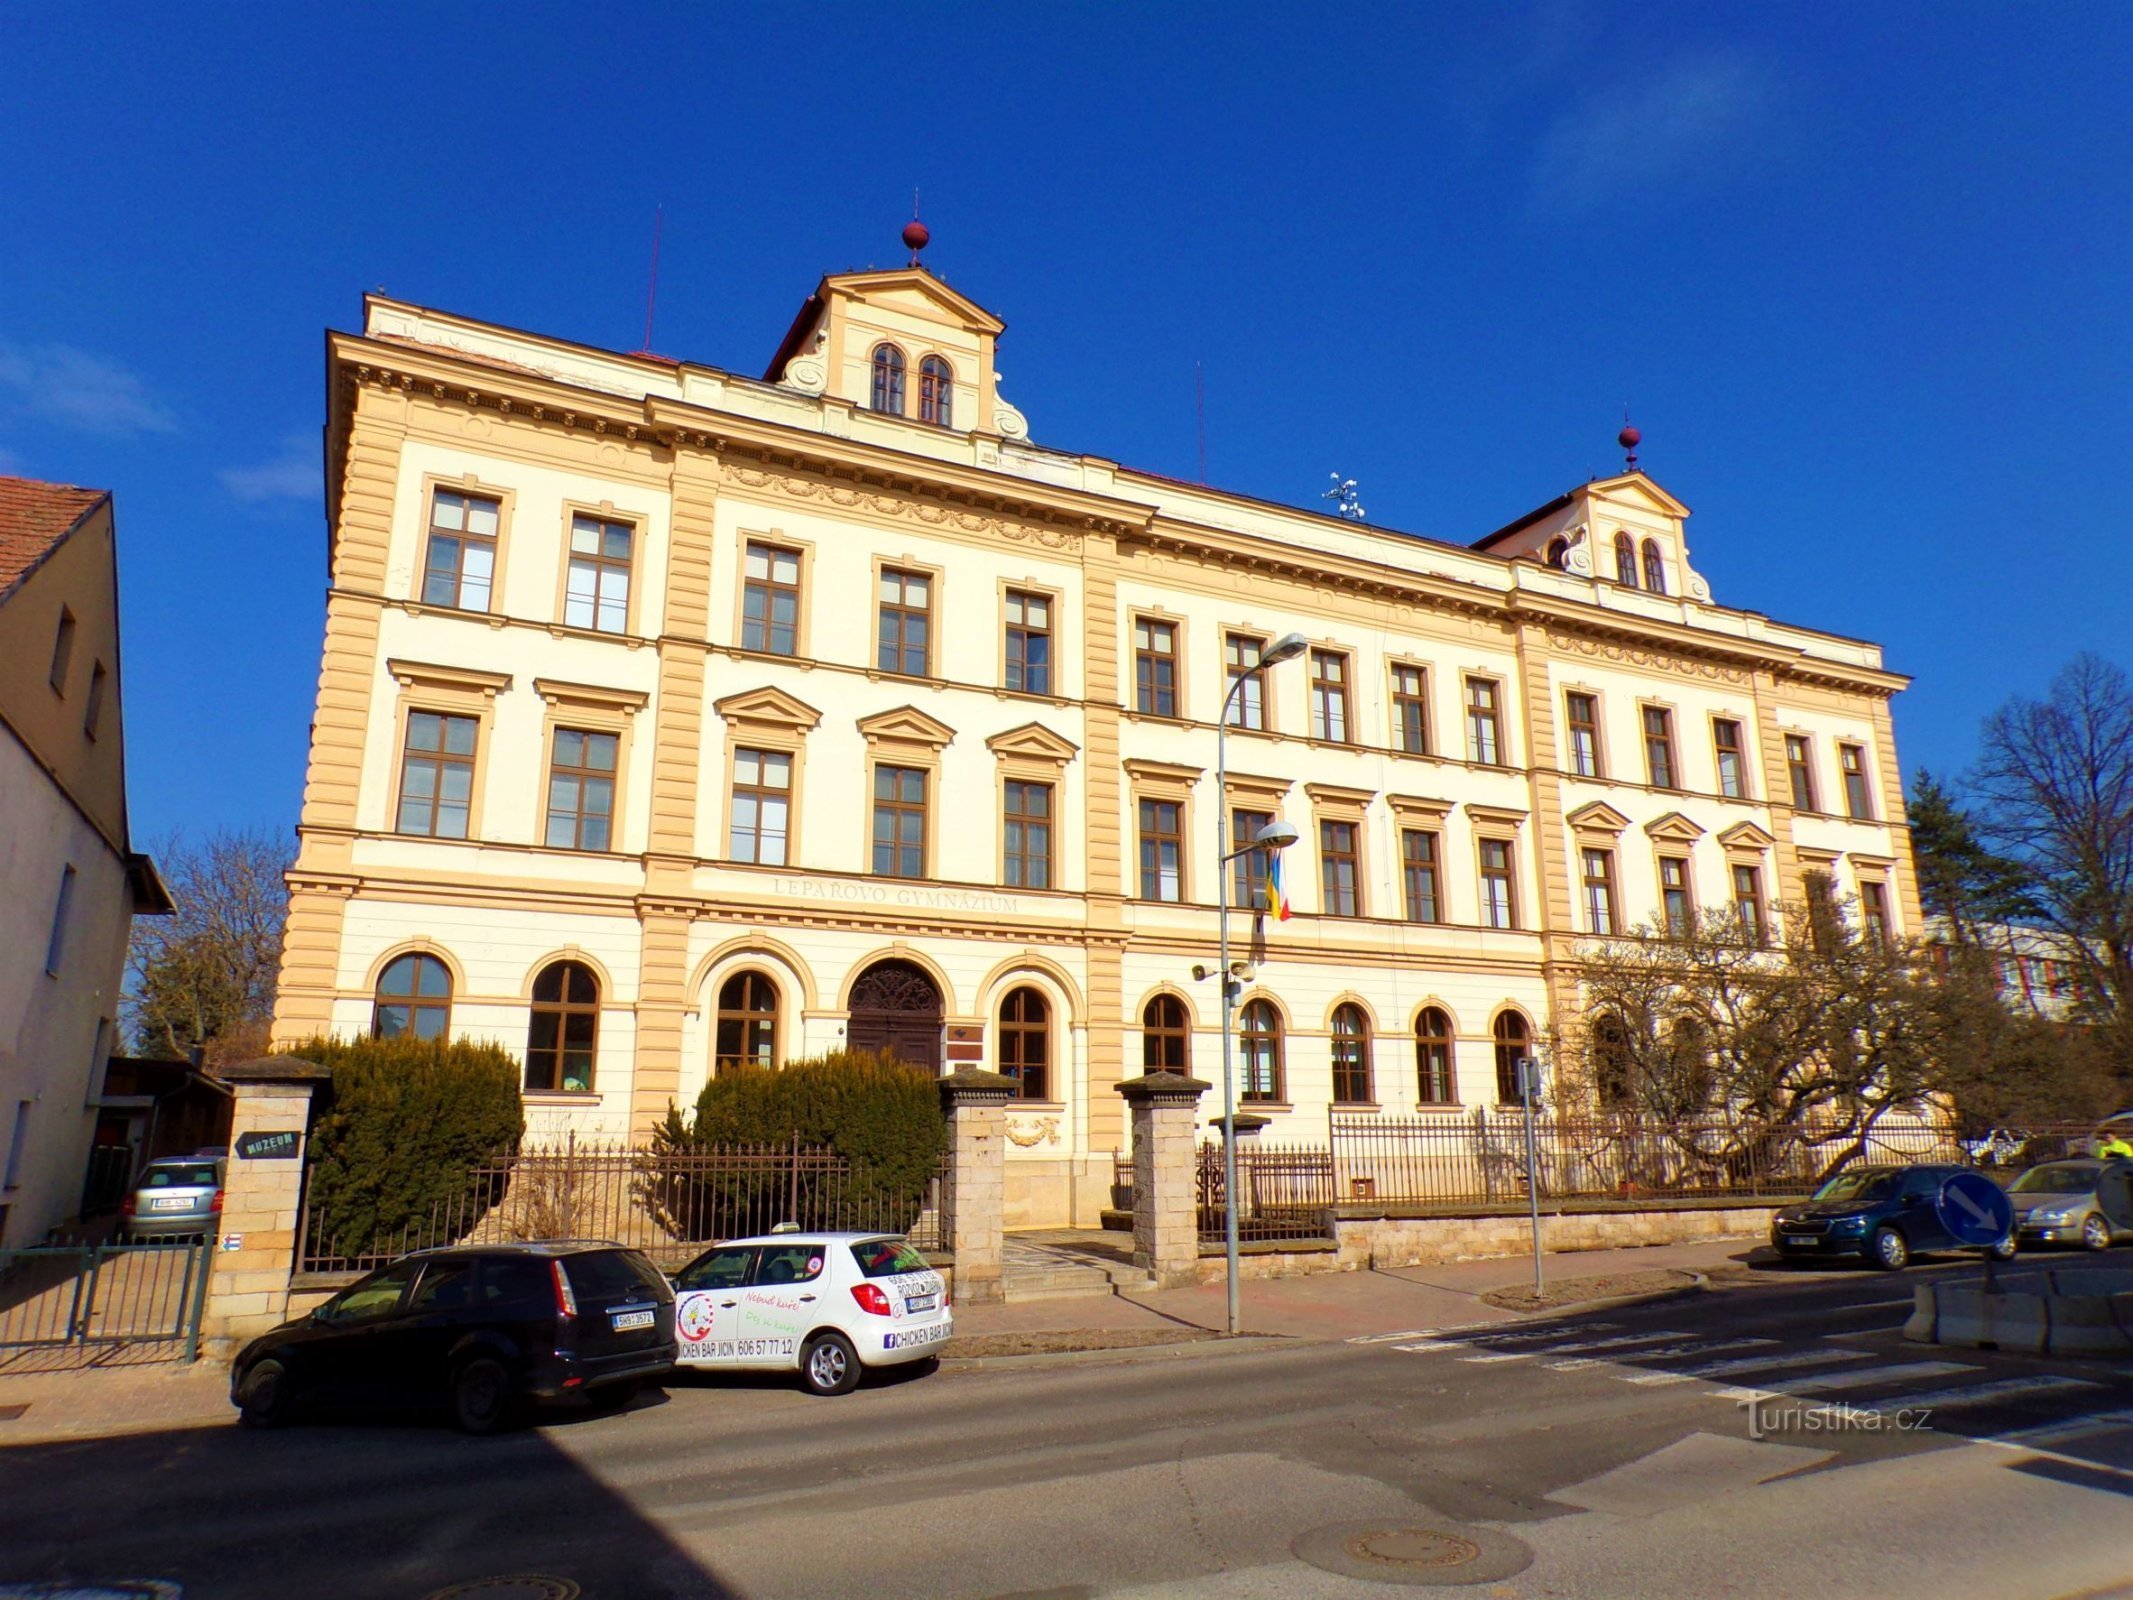 Lepař's middelbare school in Holínské Předměstí (Jičín, 3.3.2022/XNUMX/XNUMX)